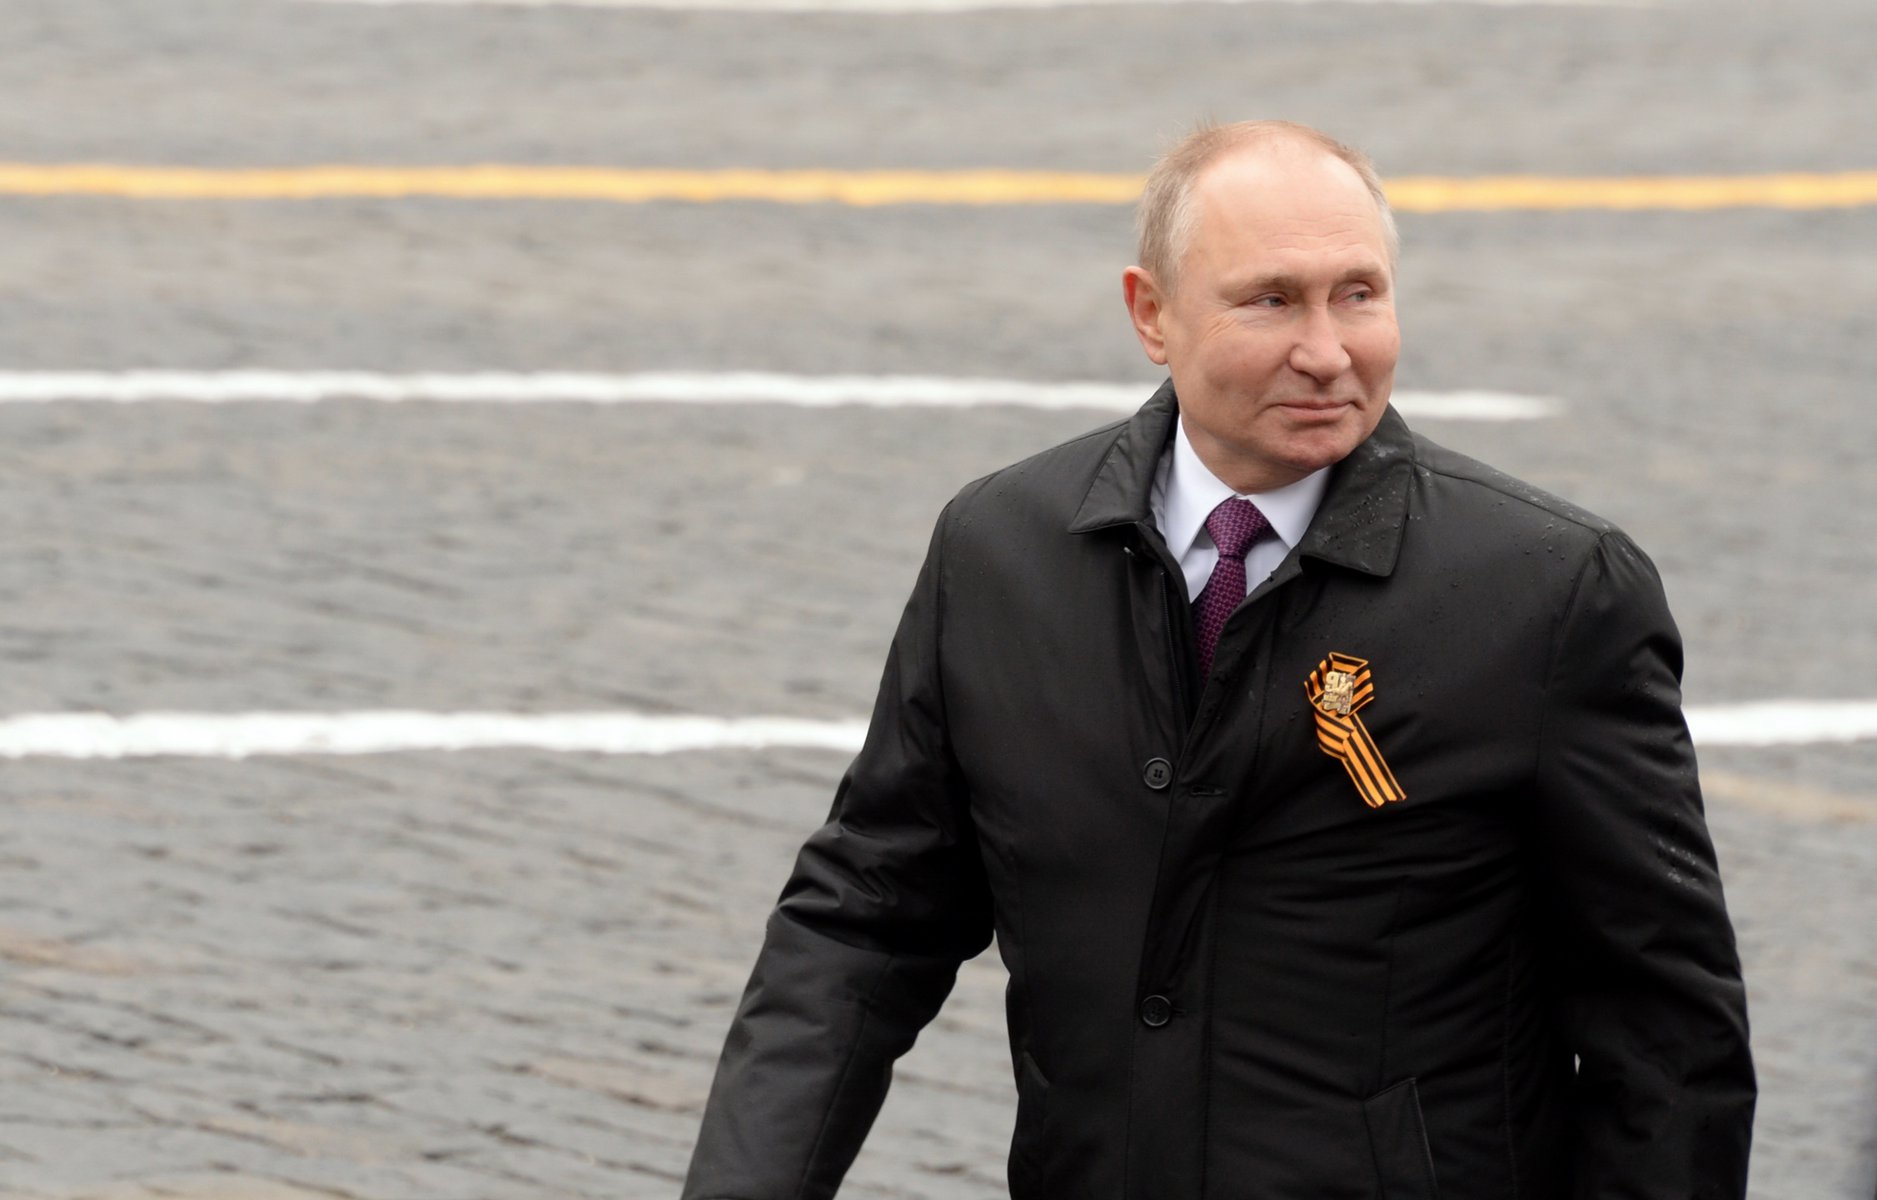 Ο Πούτιν αποχαιρετά τον Μπερλουσκόνι: «Για μένα ο Σίλβιο ήταν ένας αληθινός φίλος»